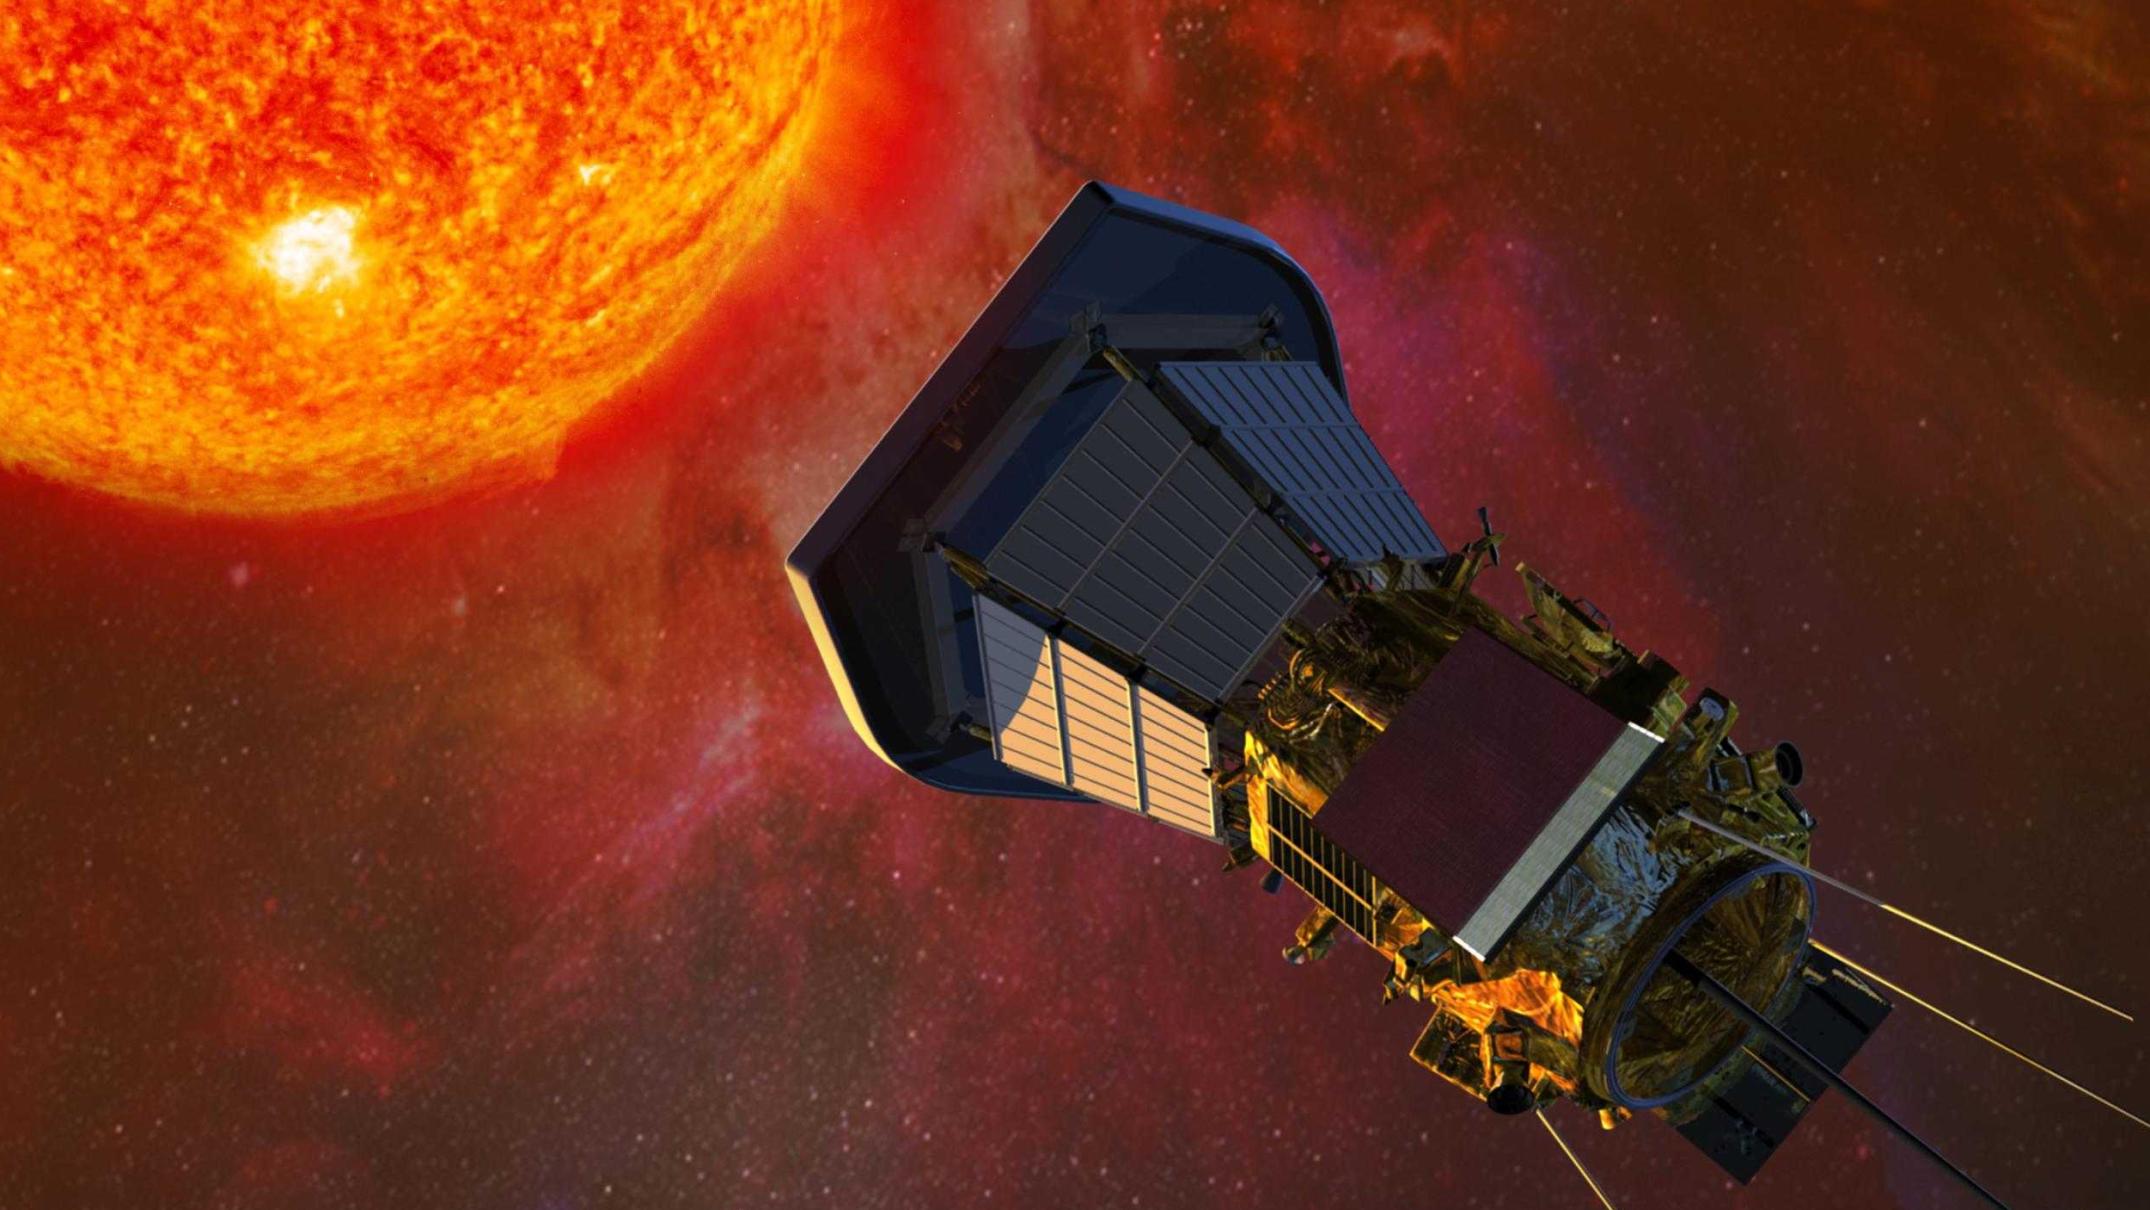 Посмотрите, как космический корабль касается Солнца в новом потрясающем видео